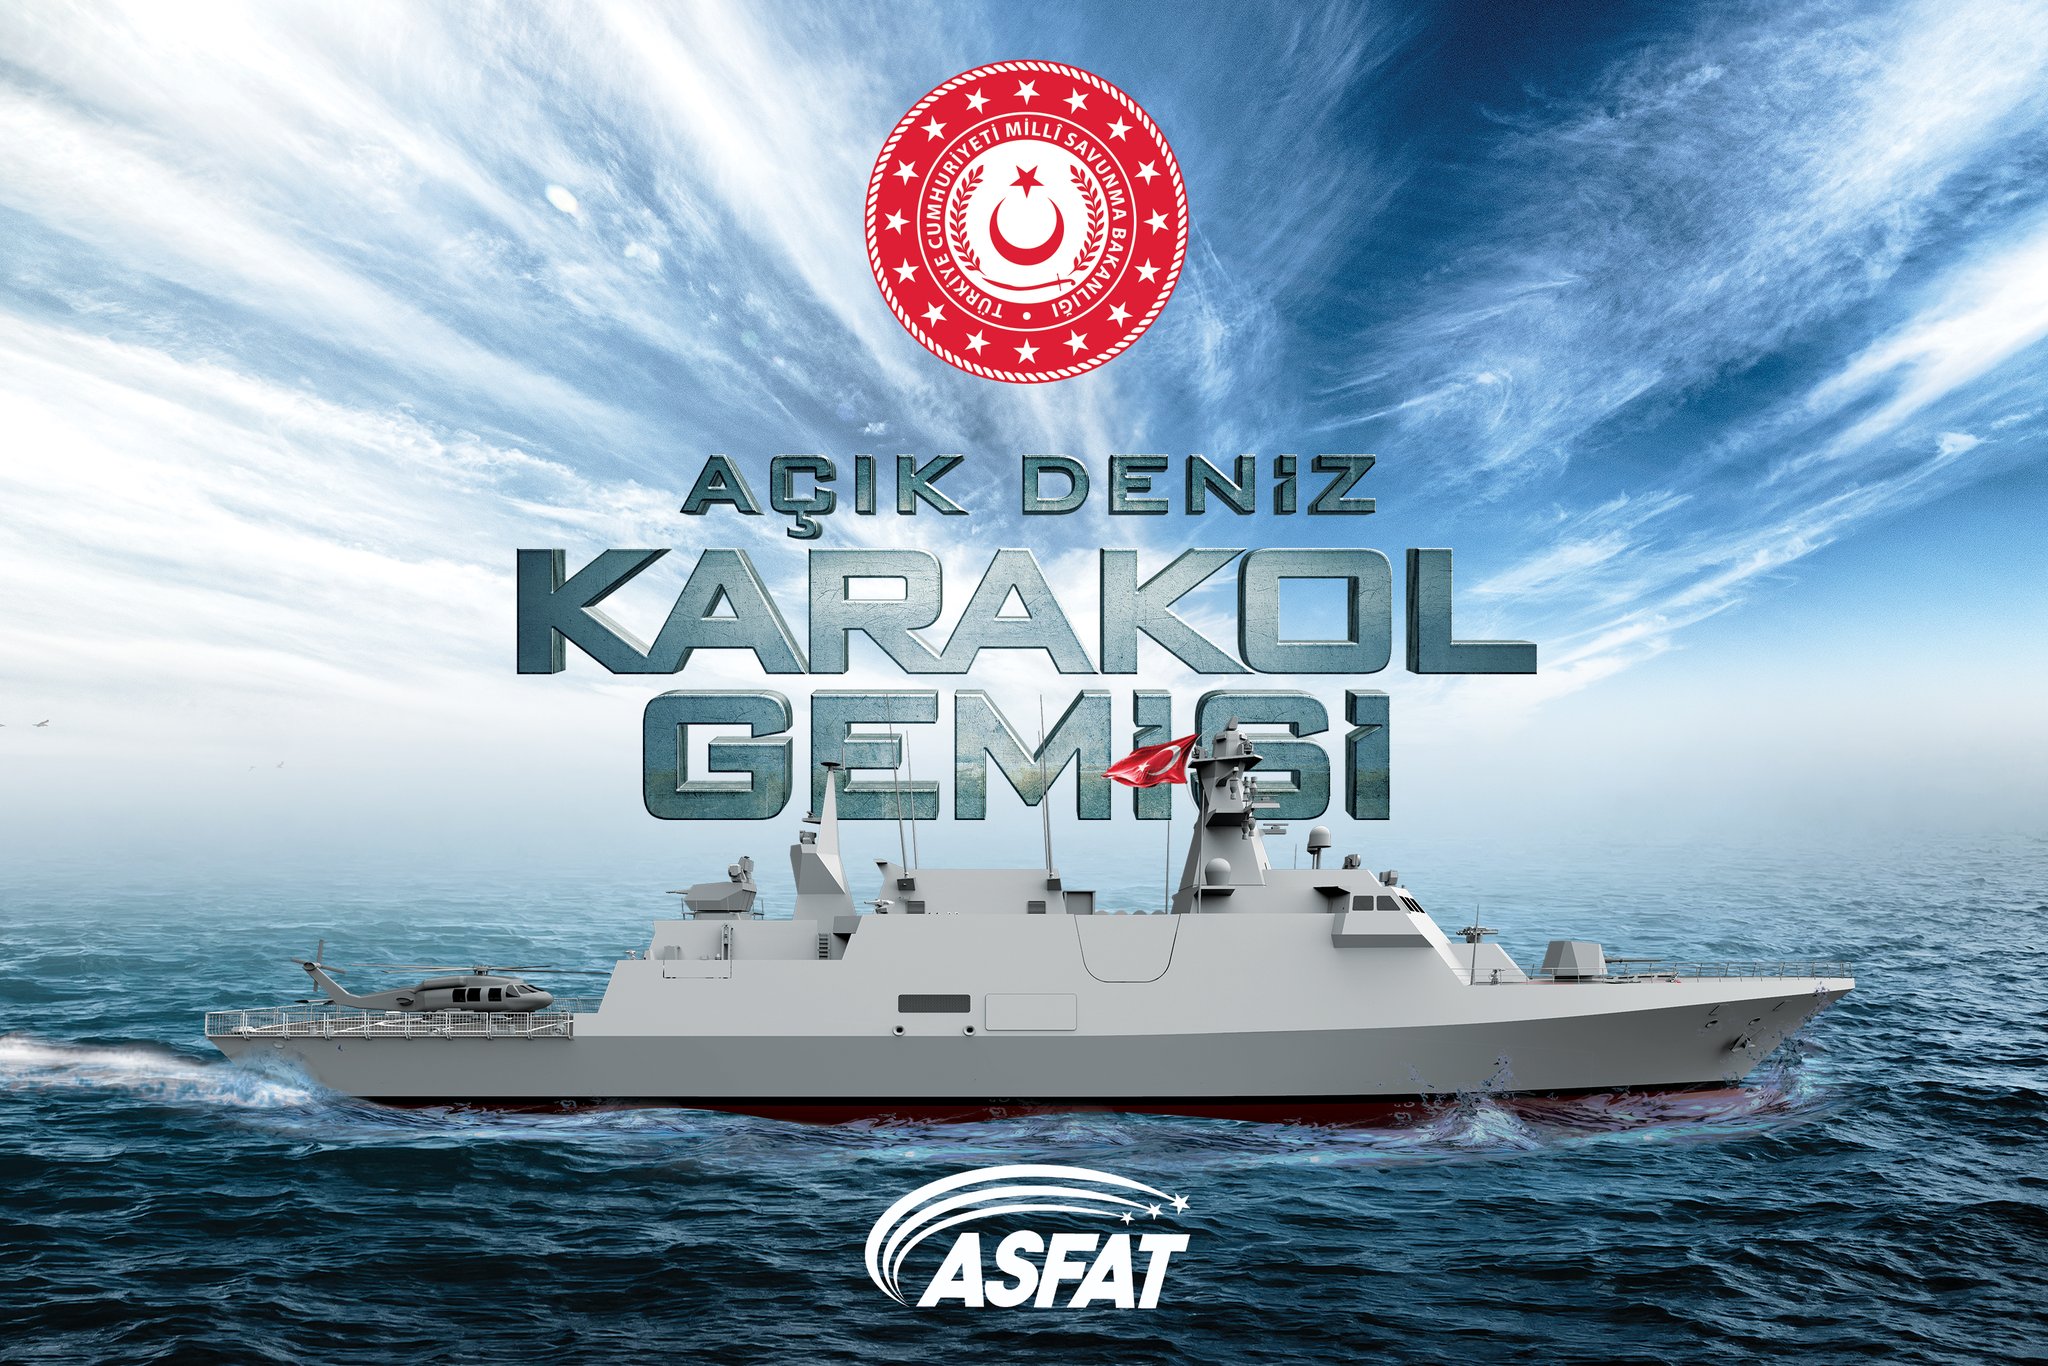 ASFAT, Açık Deniz Karakol Gemilerinin üretimine geçildiğini açıkladı |  DefenceTurk